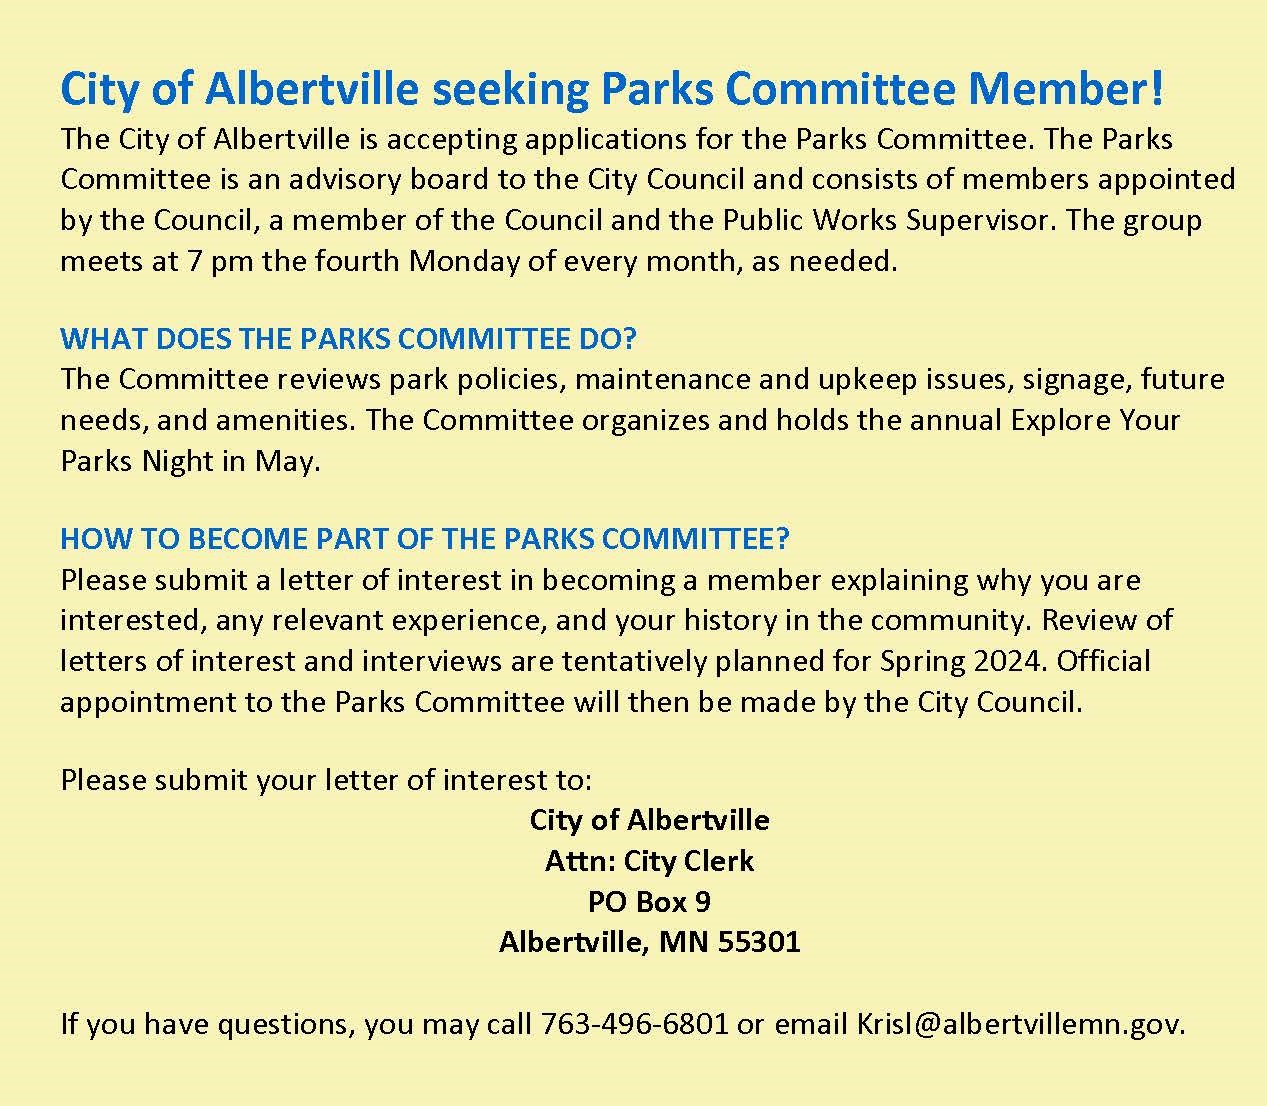 006-Now Seeking Parks Committee Member